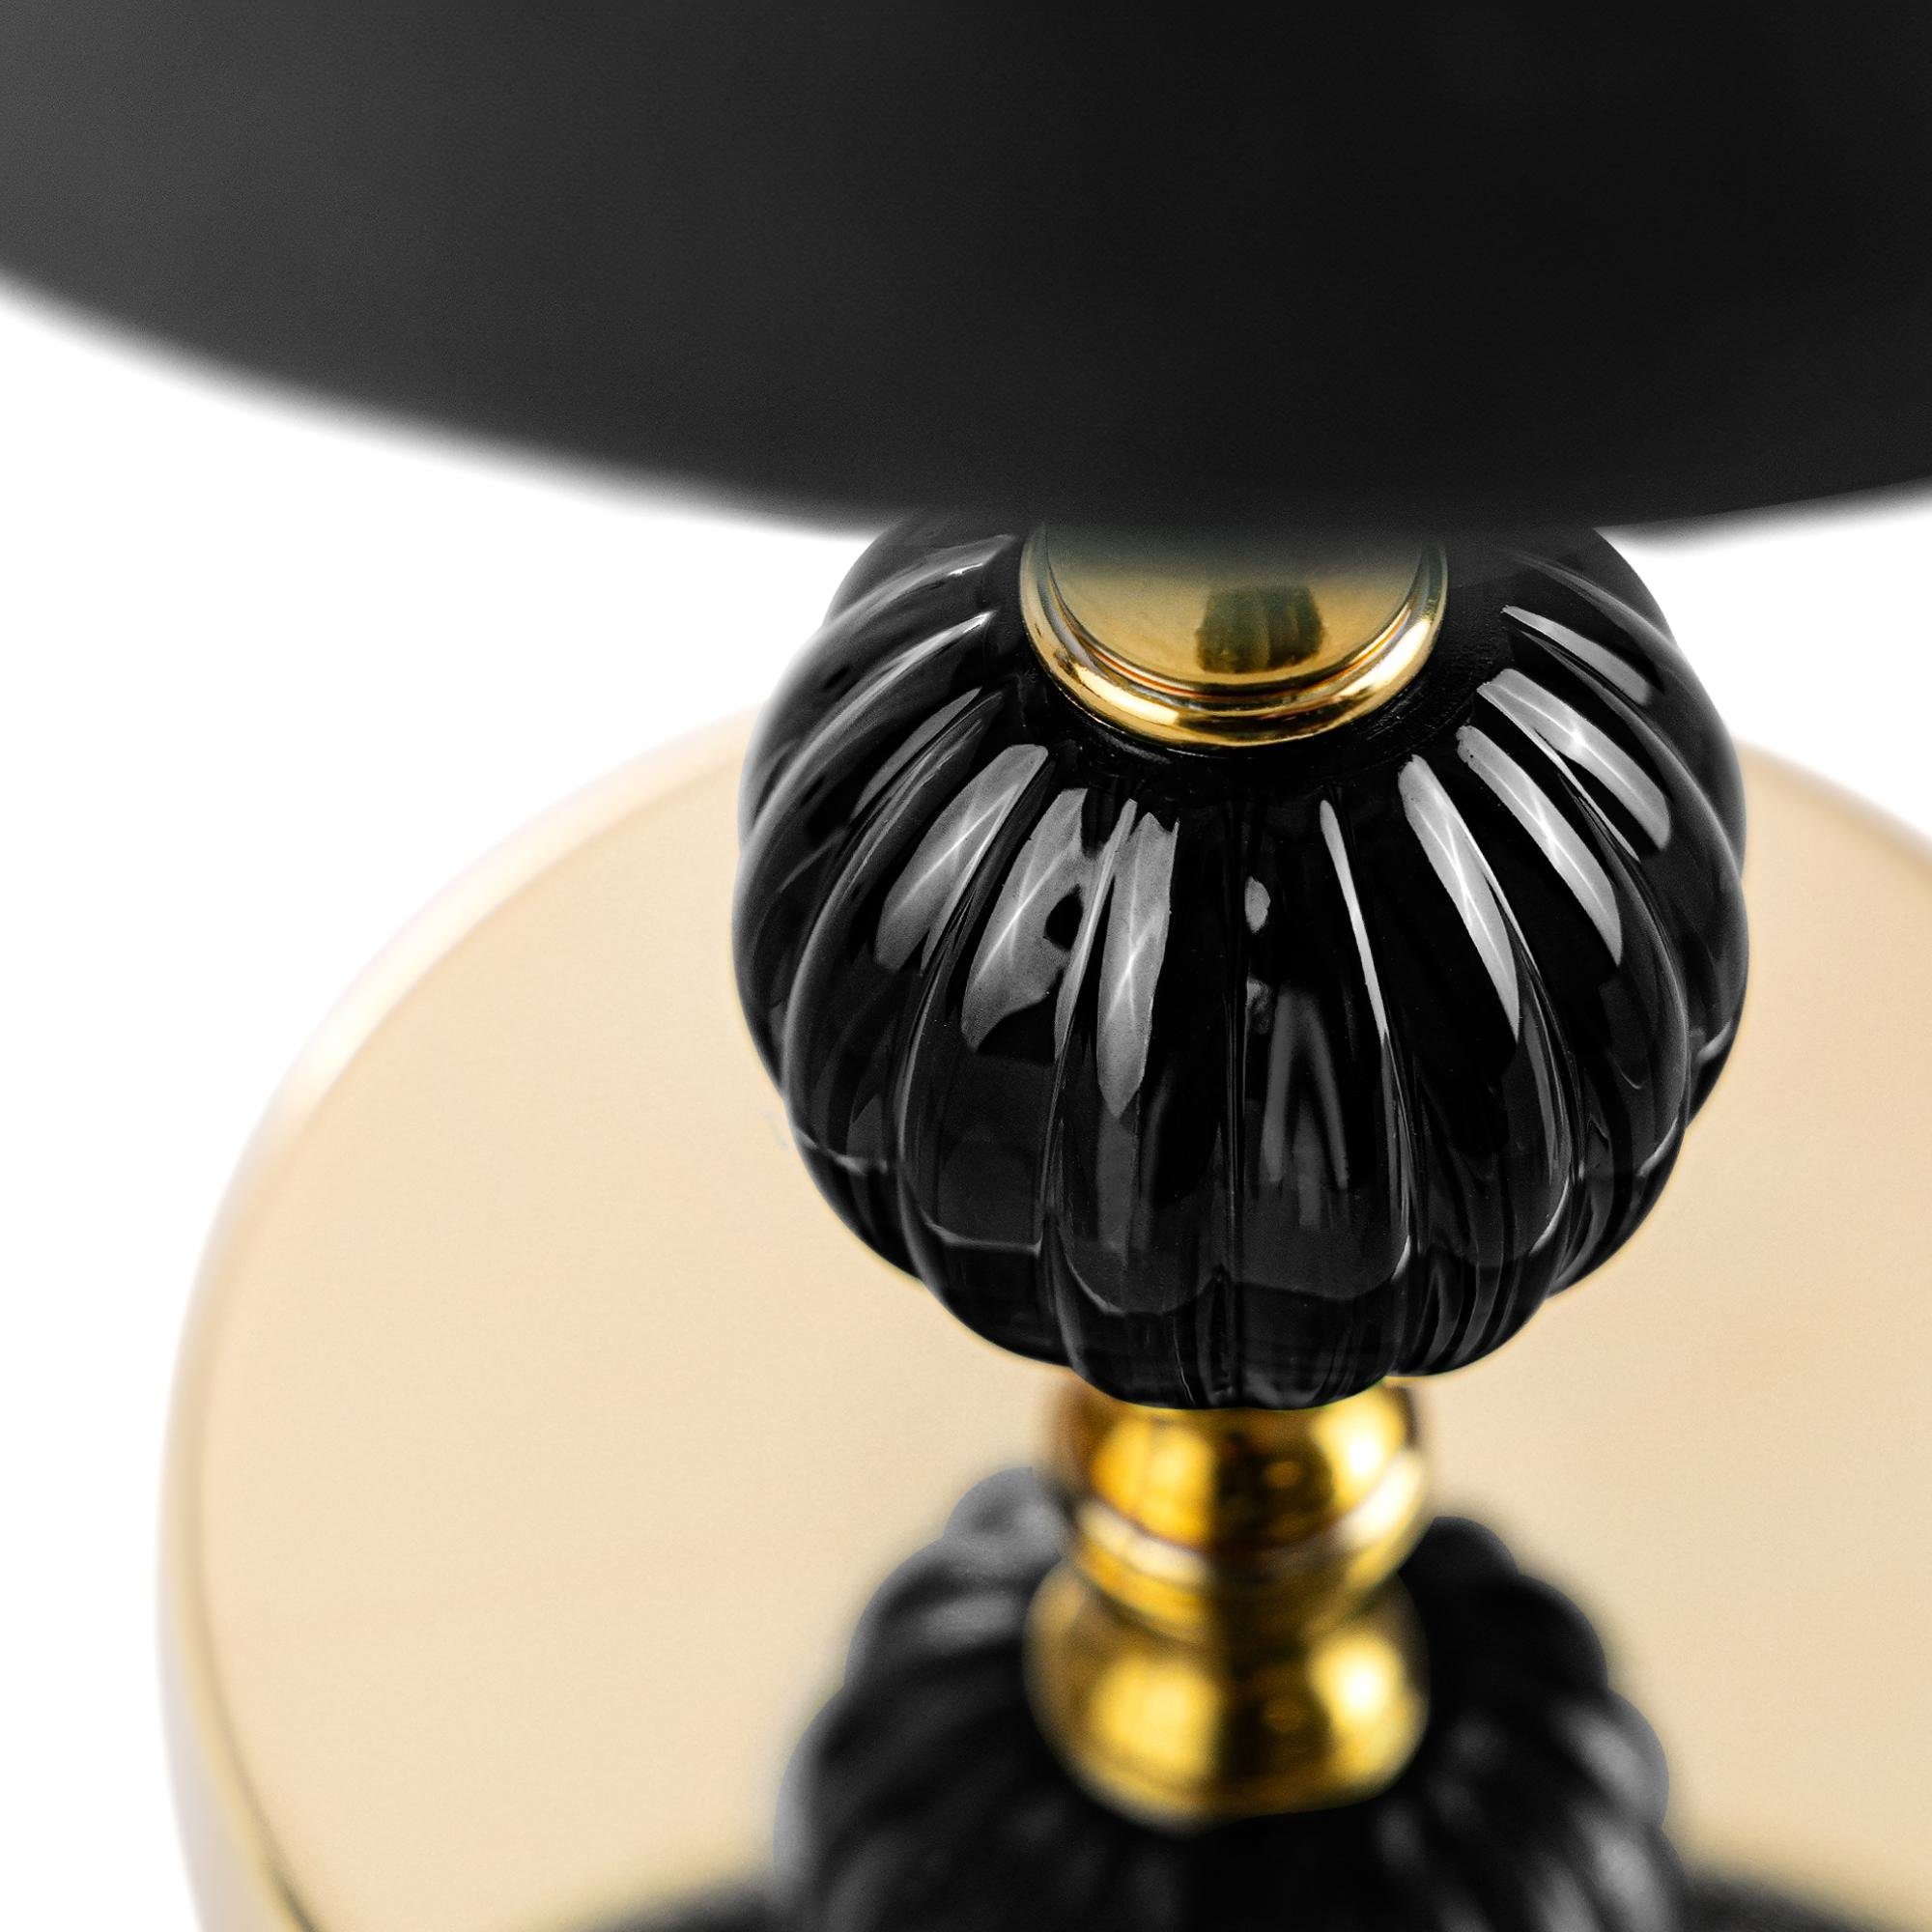 Tischleuchte, Lampe Konsimo ohne VULGA Leuchtmittel, Tischleuchte elegante Tischlampe schwarz/gold